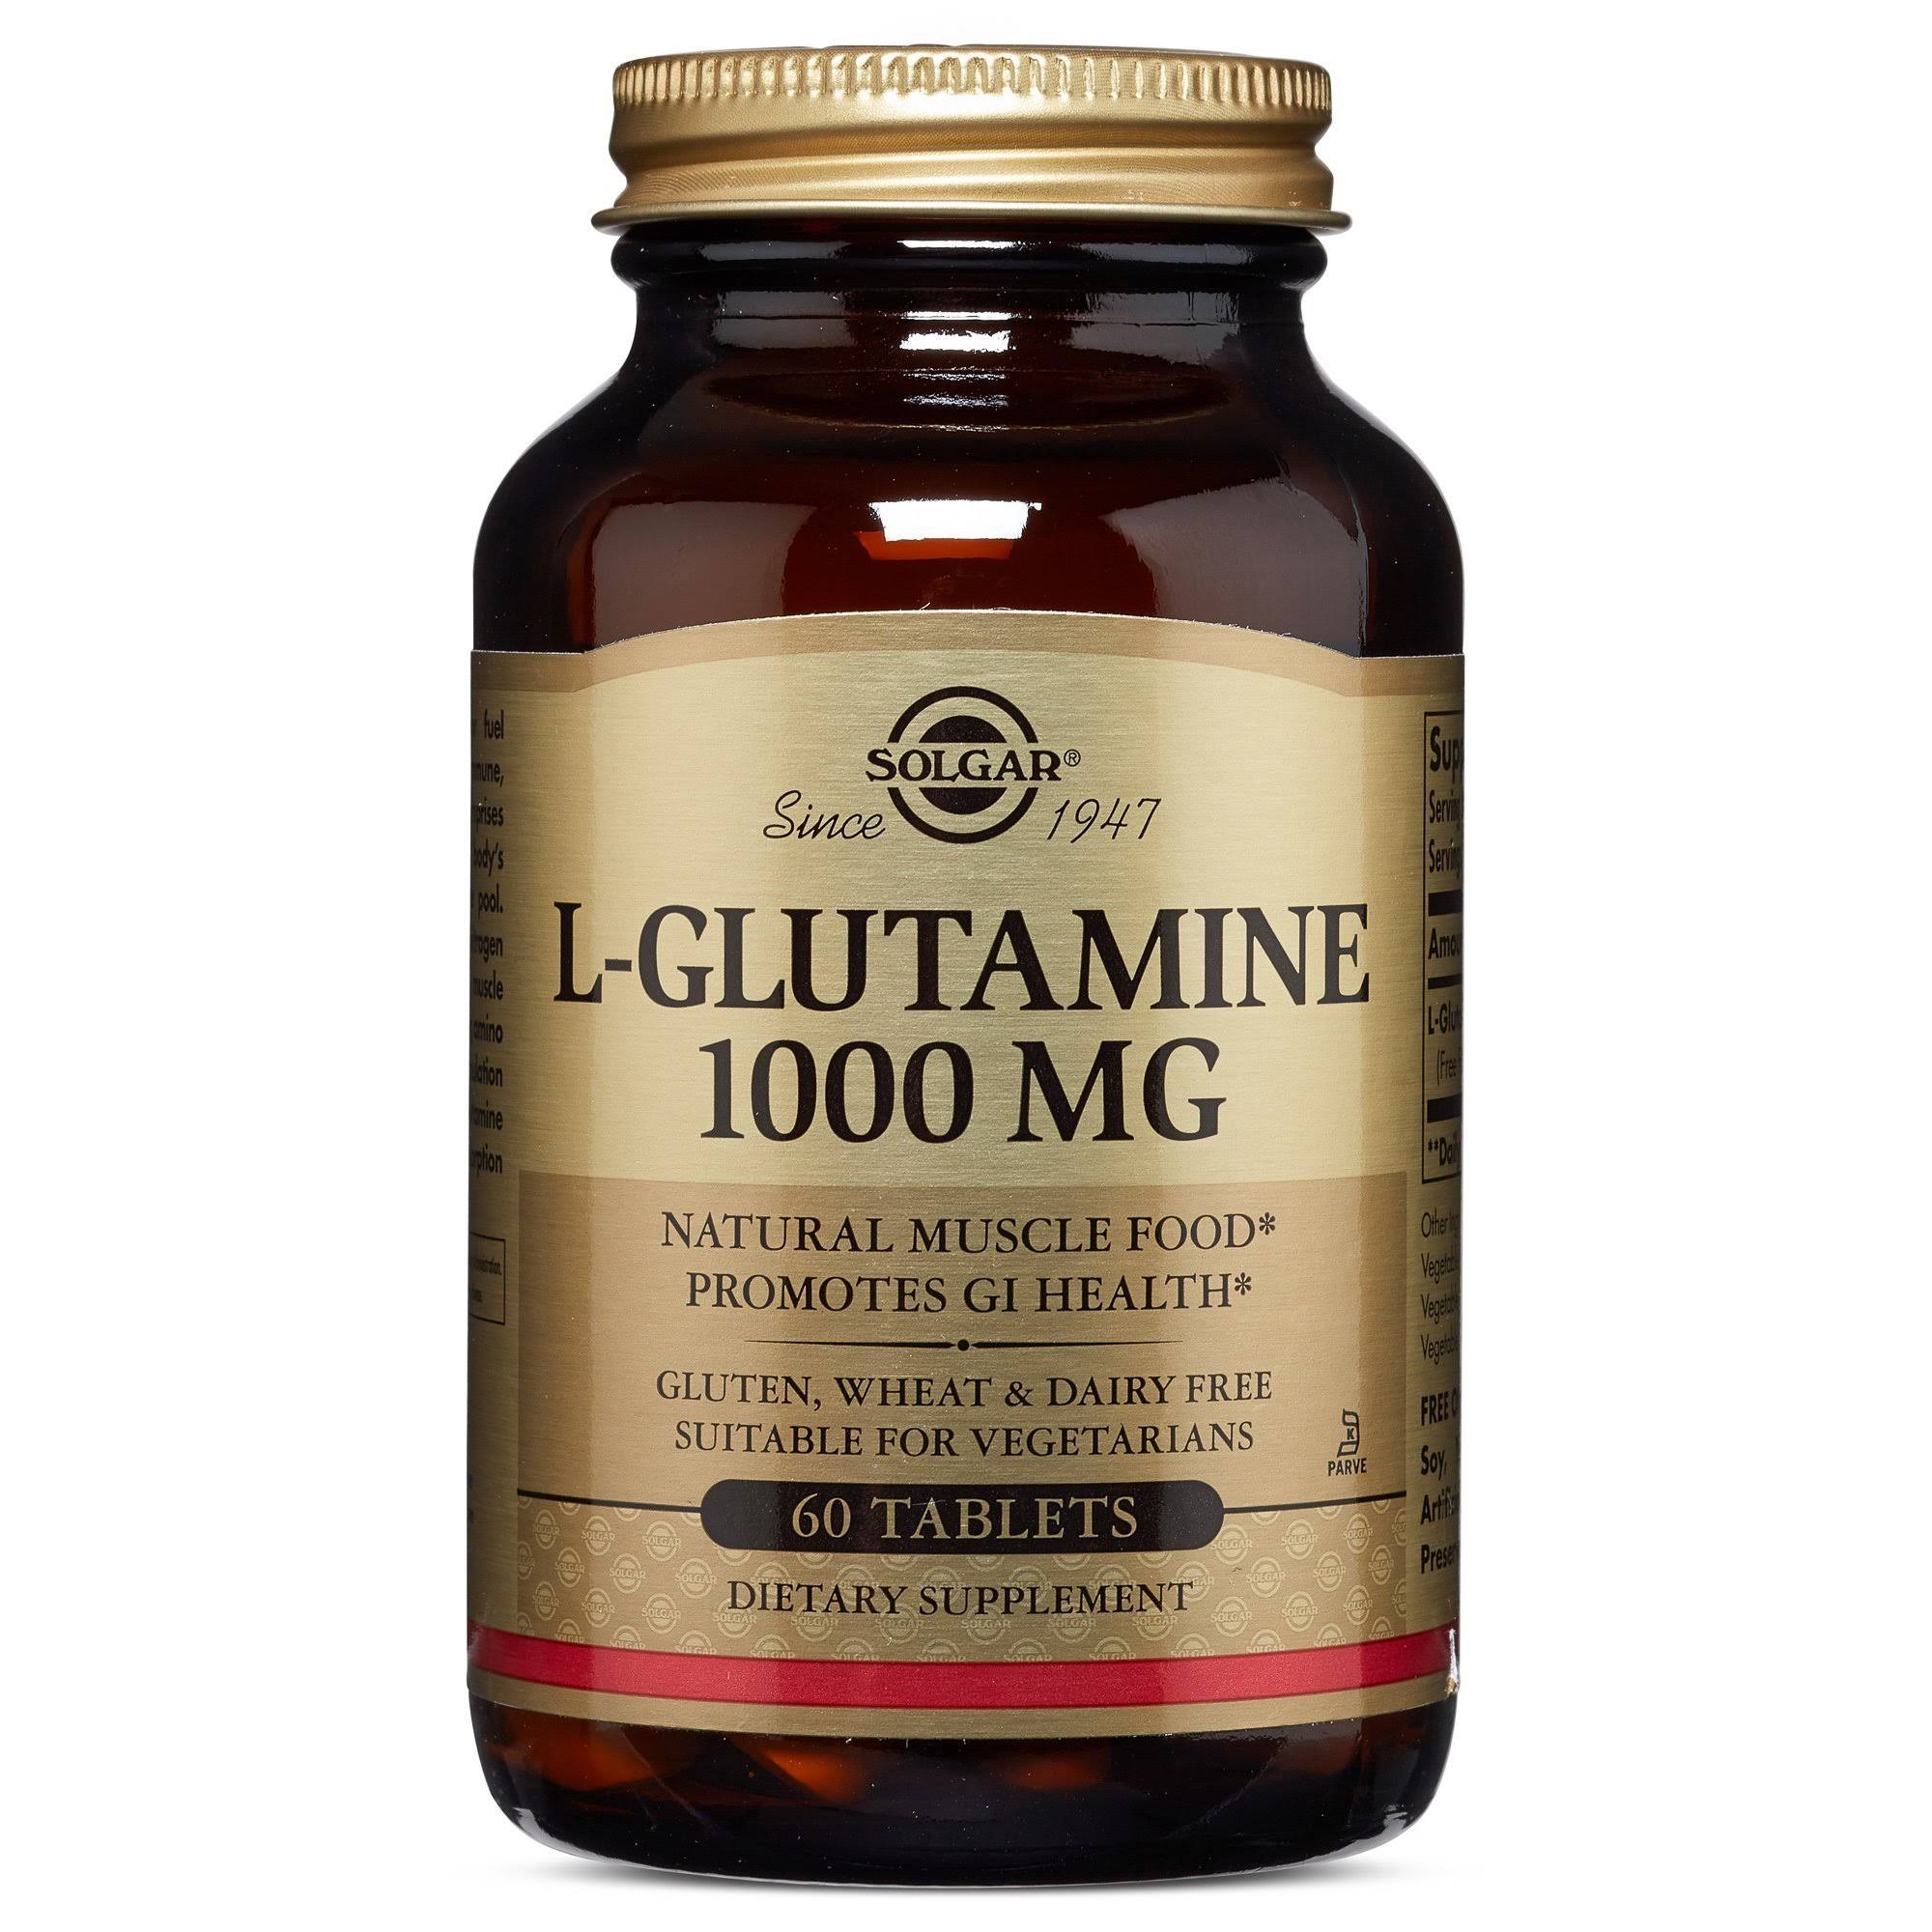 Solgar L-Glutamine Dietary Supplement - 1000mg, 60 Tablets